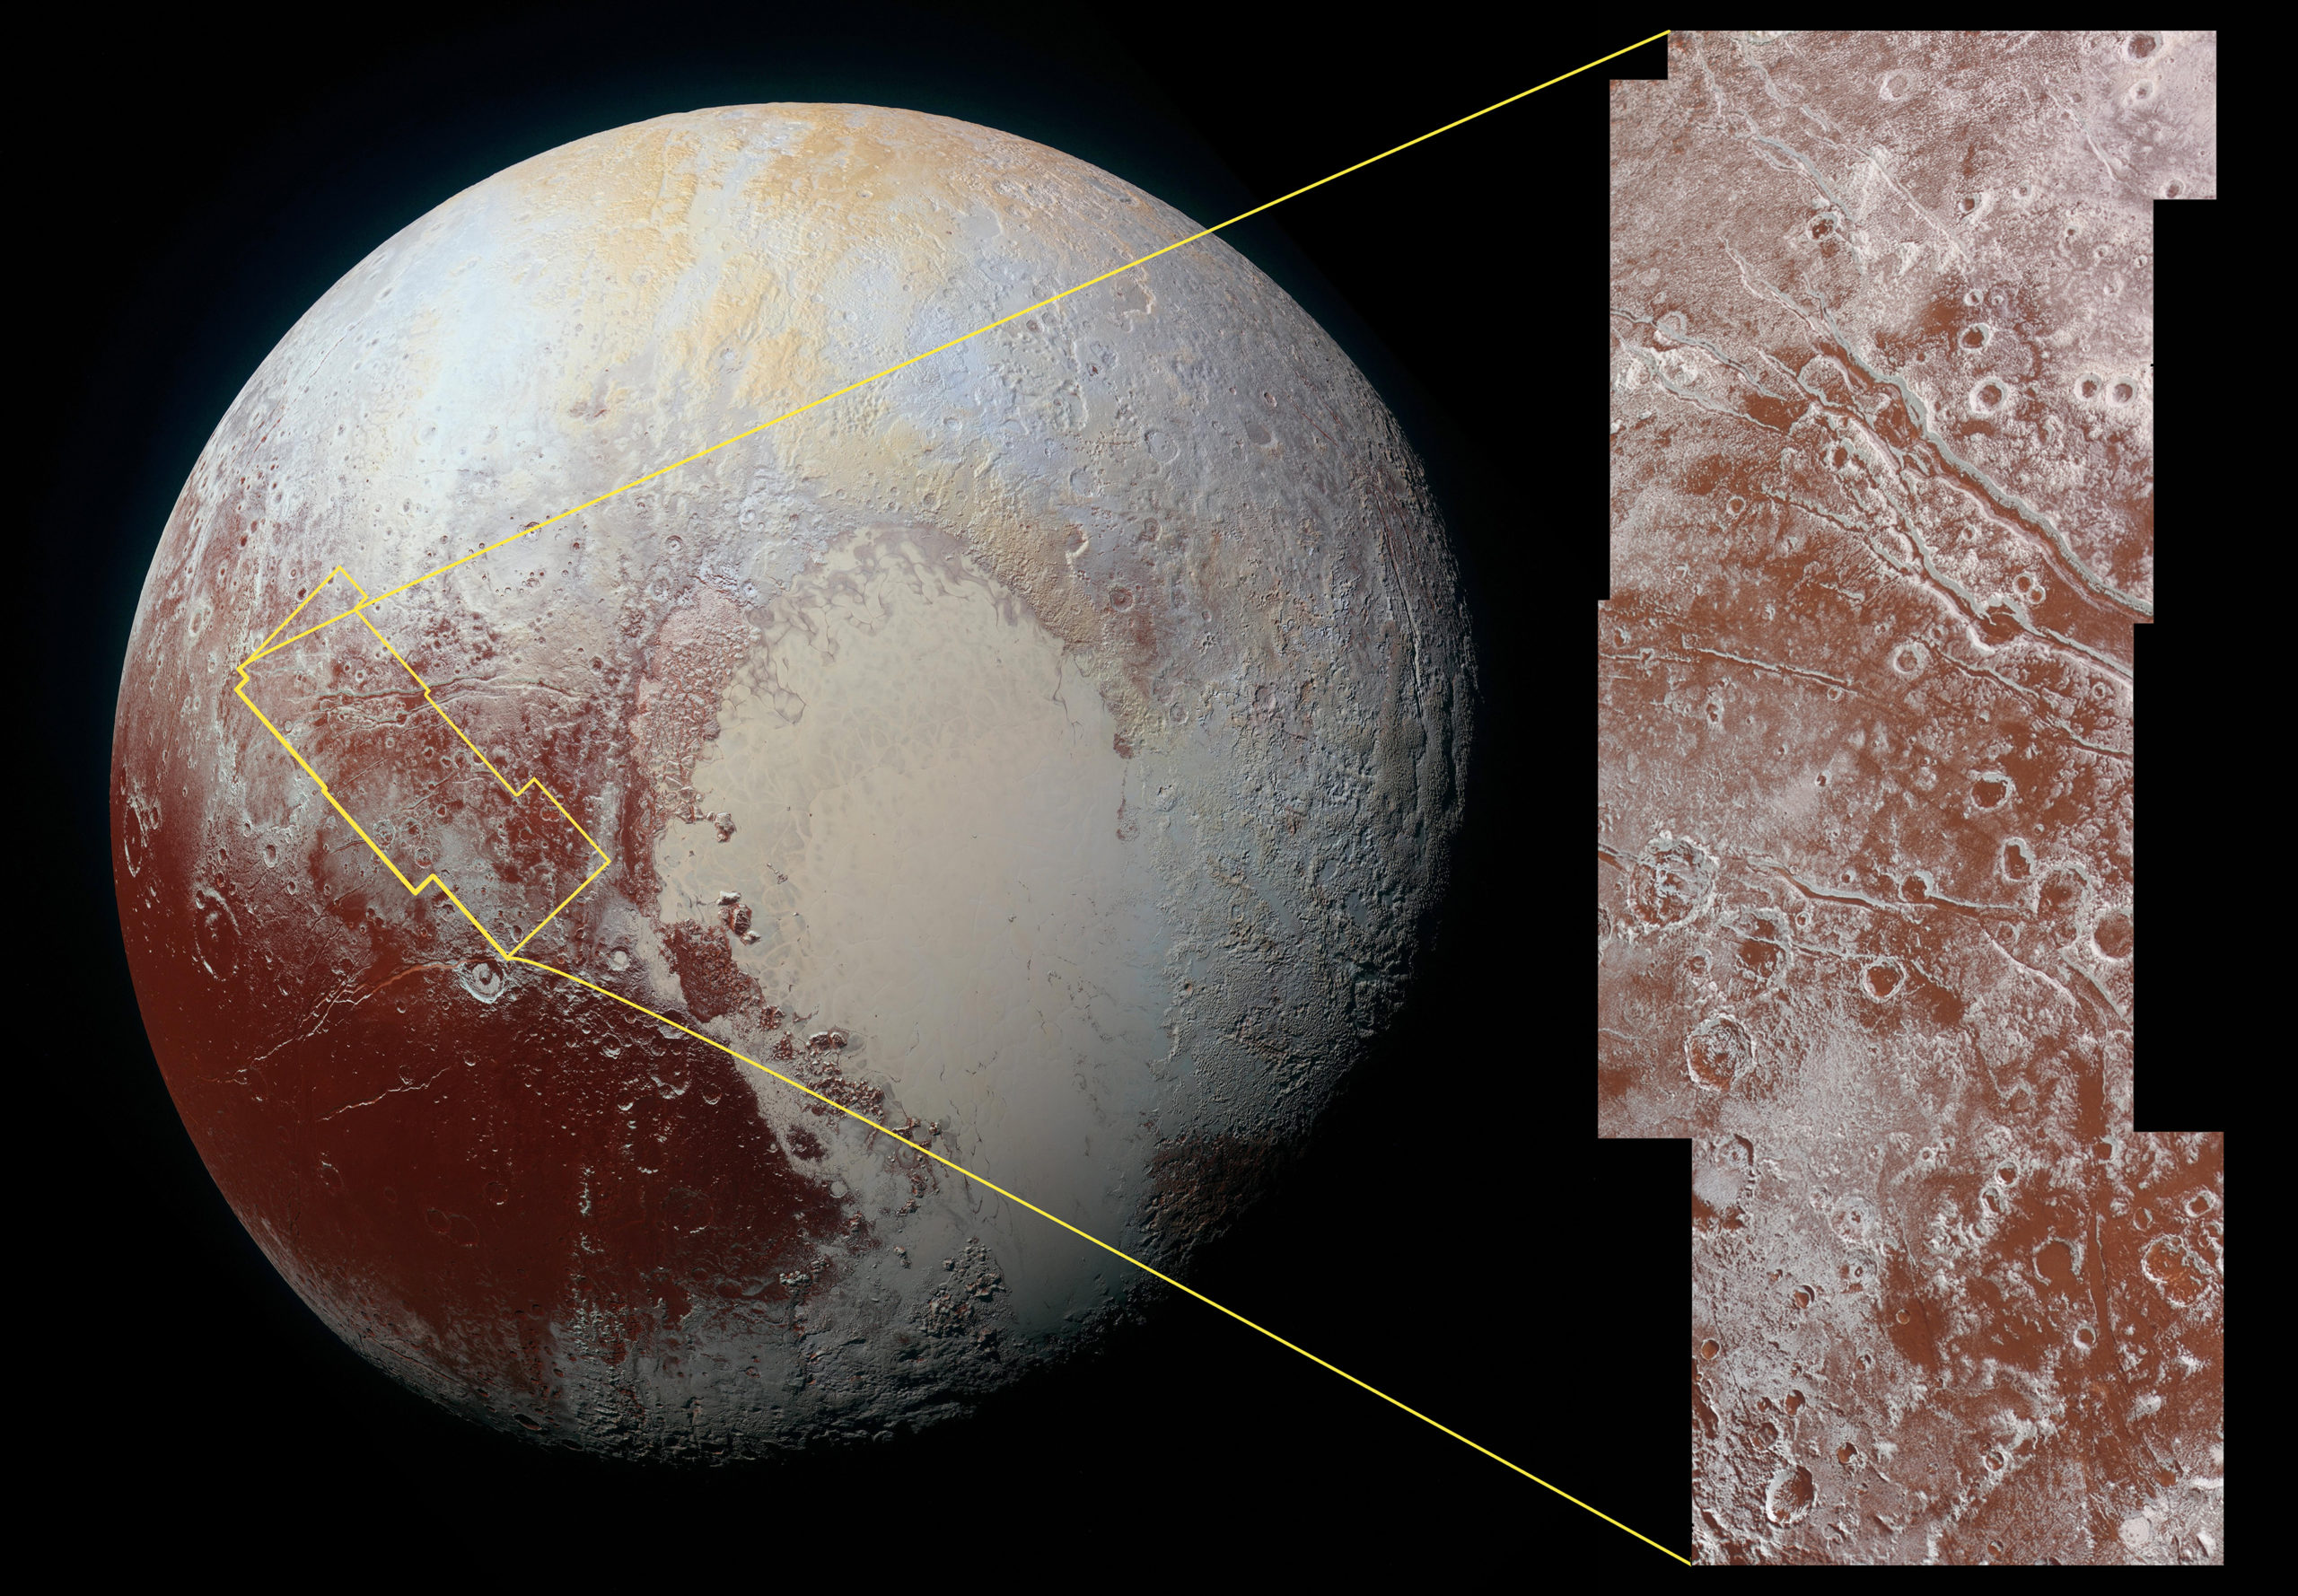 NASA’s New Photos Bring Pluto’s Surface Into Sharp Focus